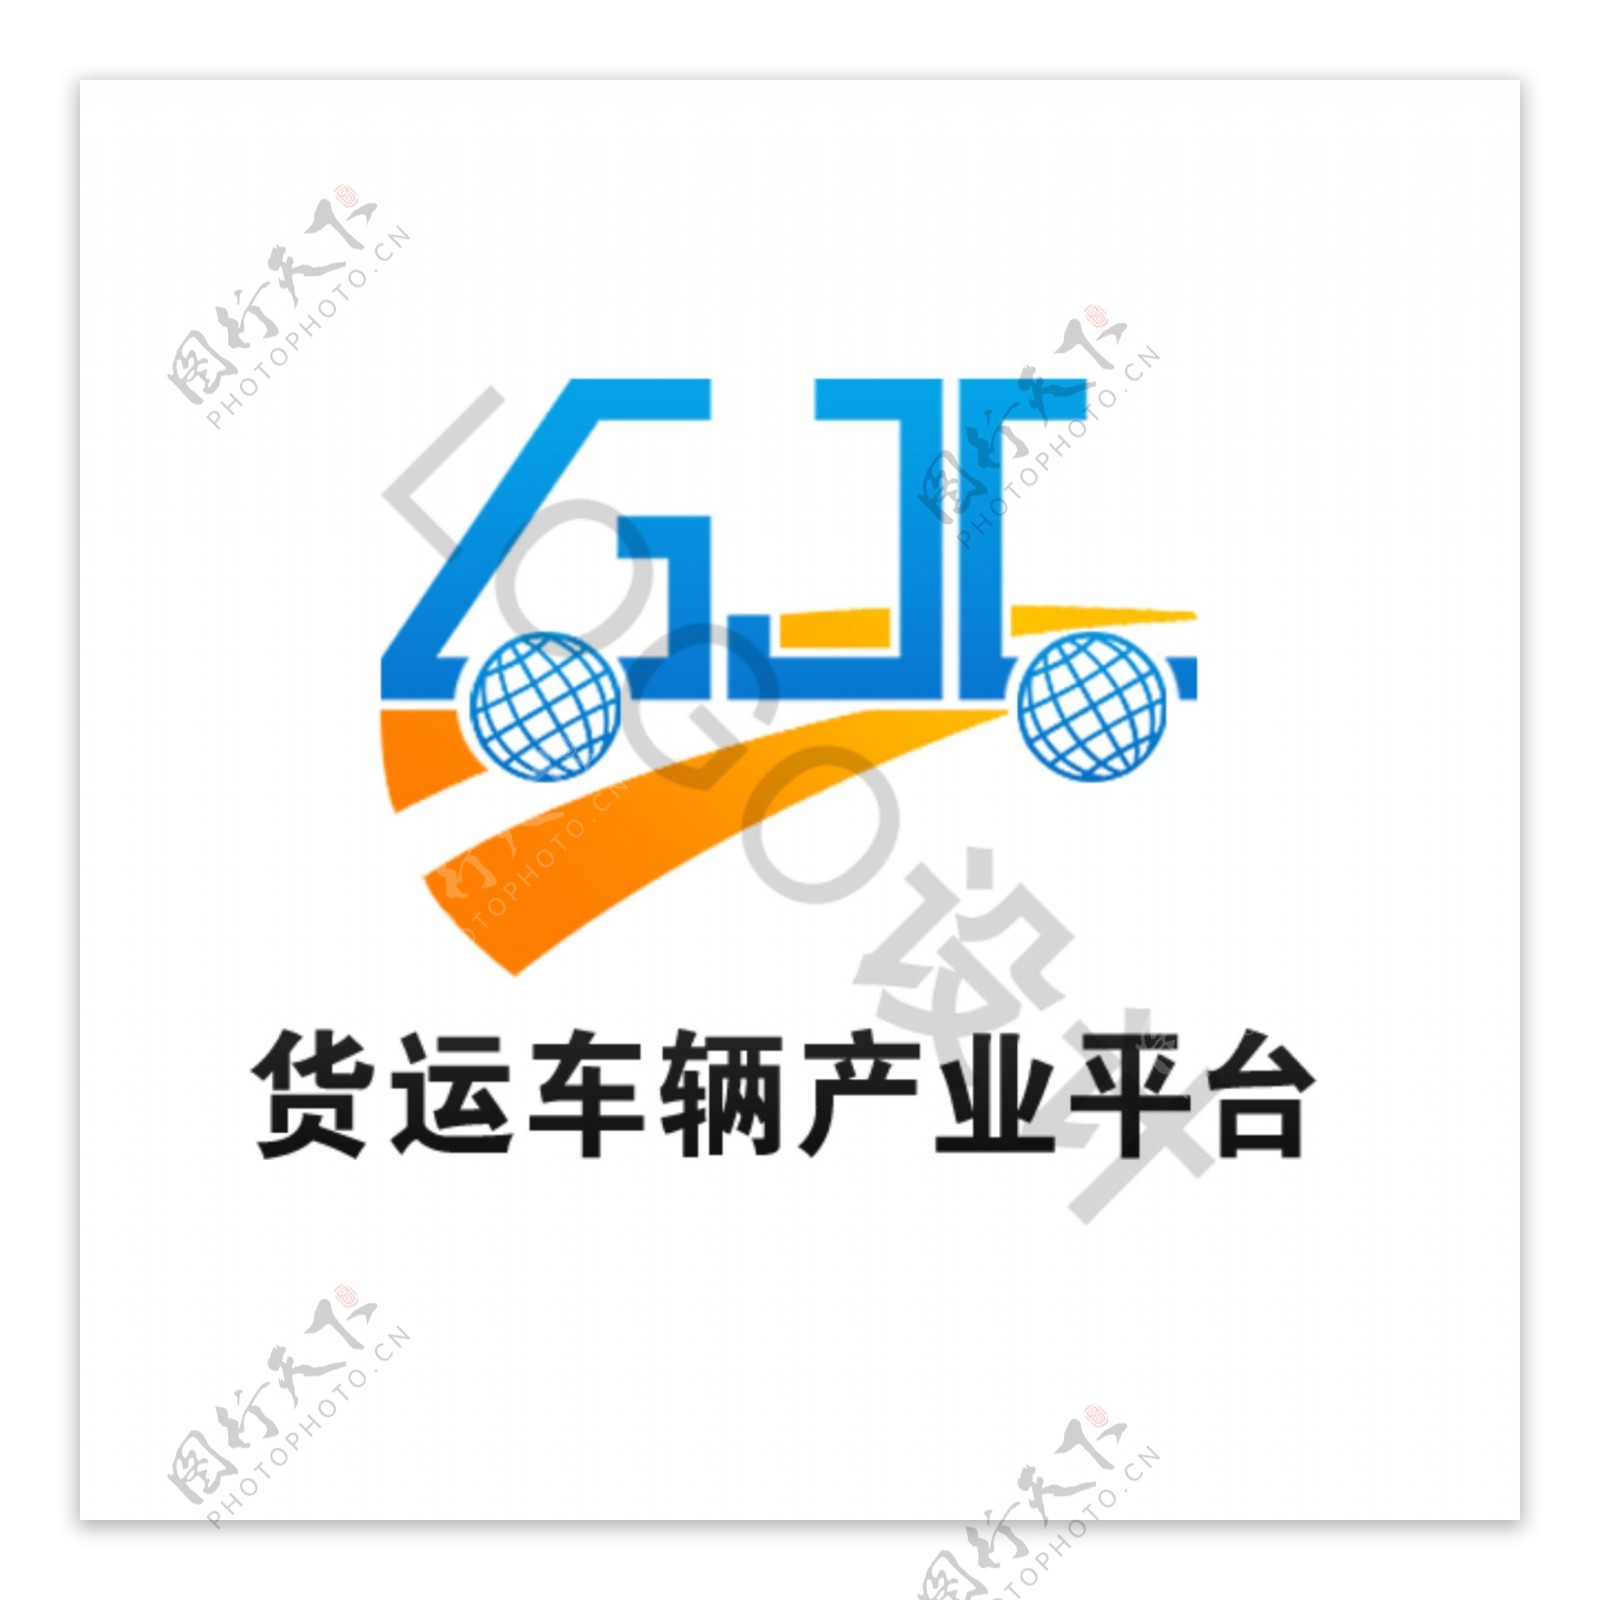 货运车辆产业平台logo设计